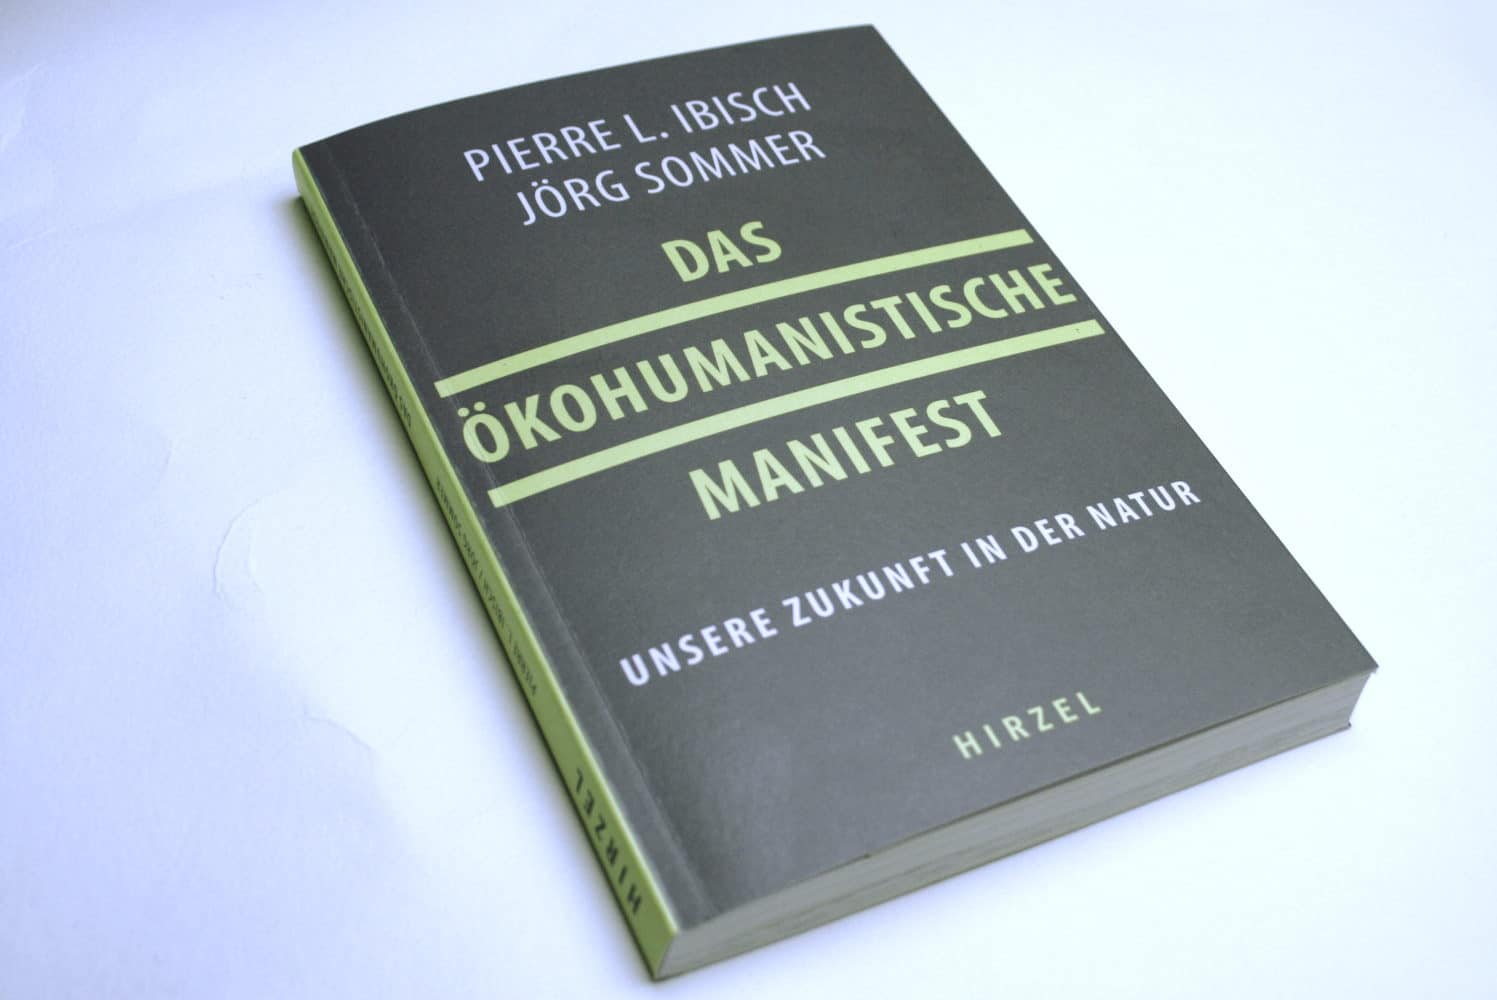 Pierre L. Ibisch, Jörg Sommer: Das ökohumanistische Manifest. Foto: Ralf Julke